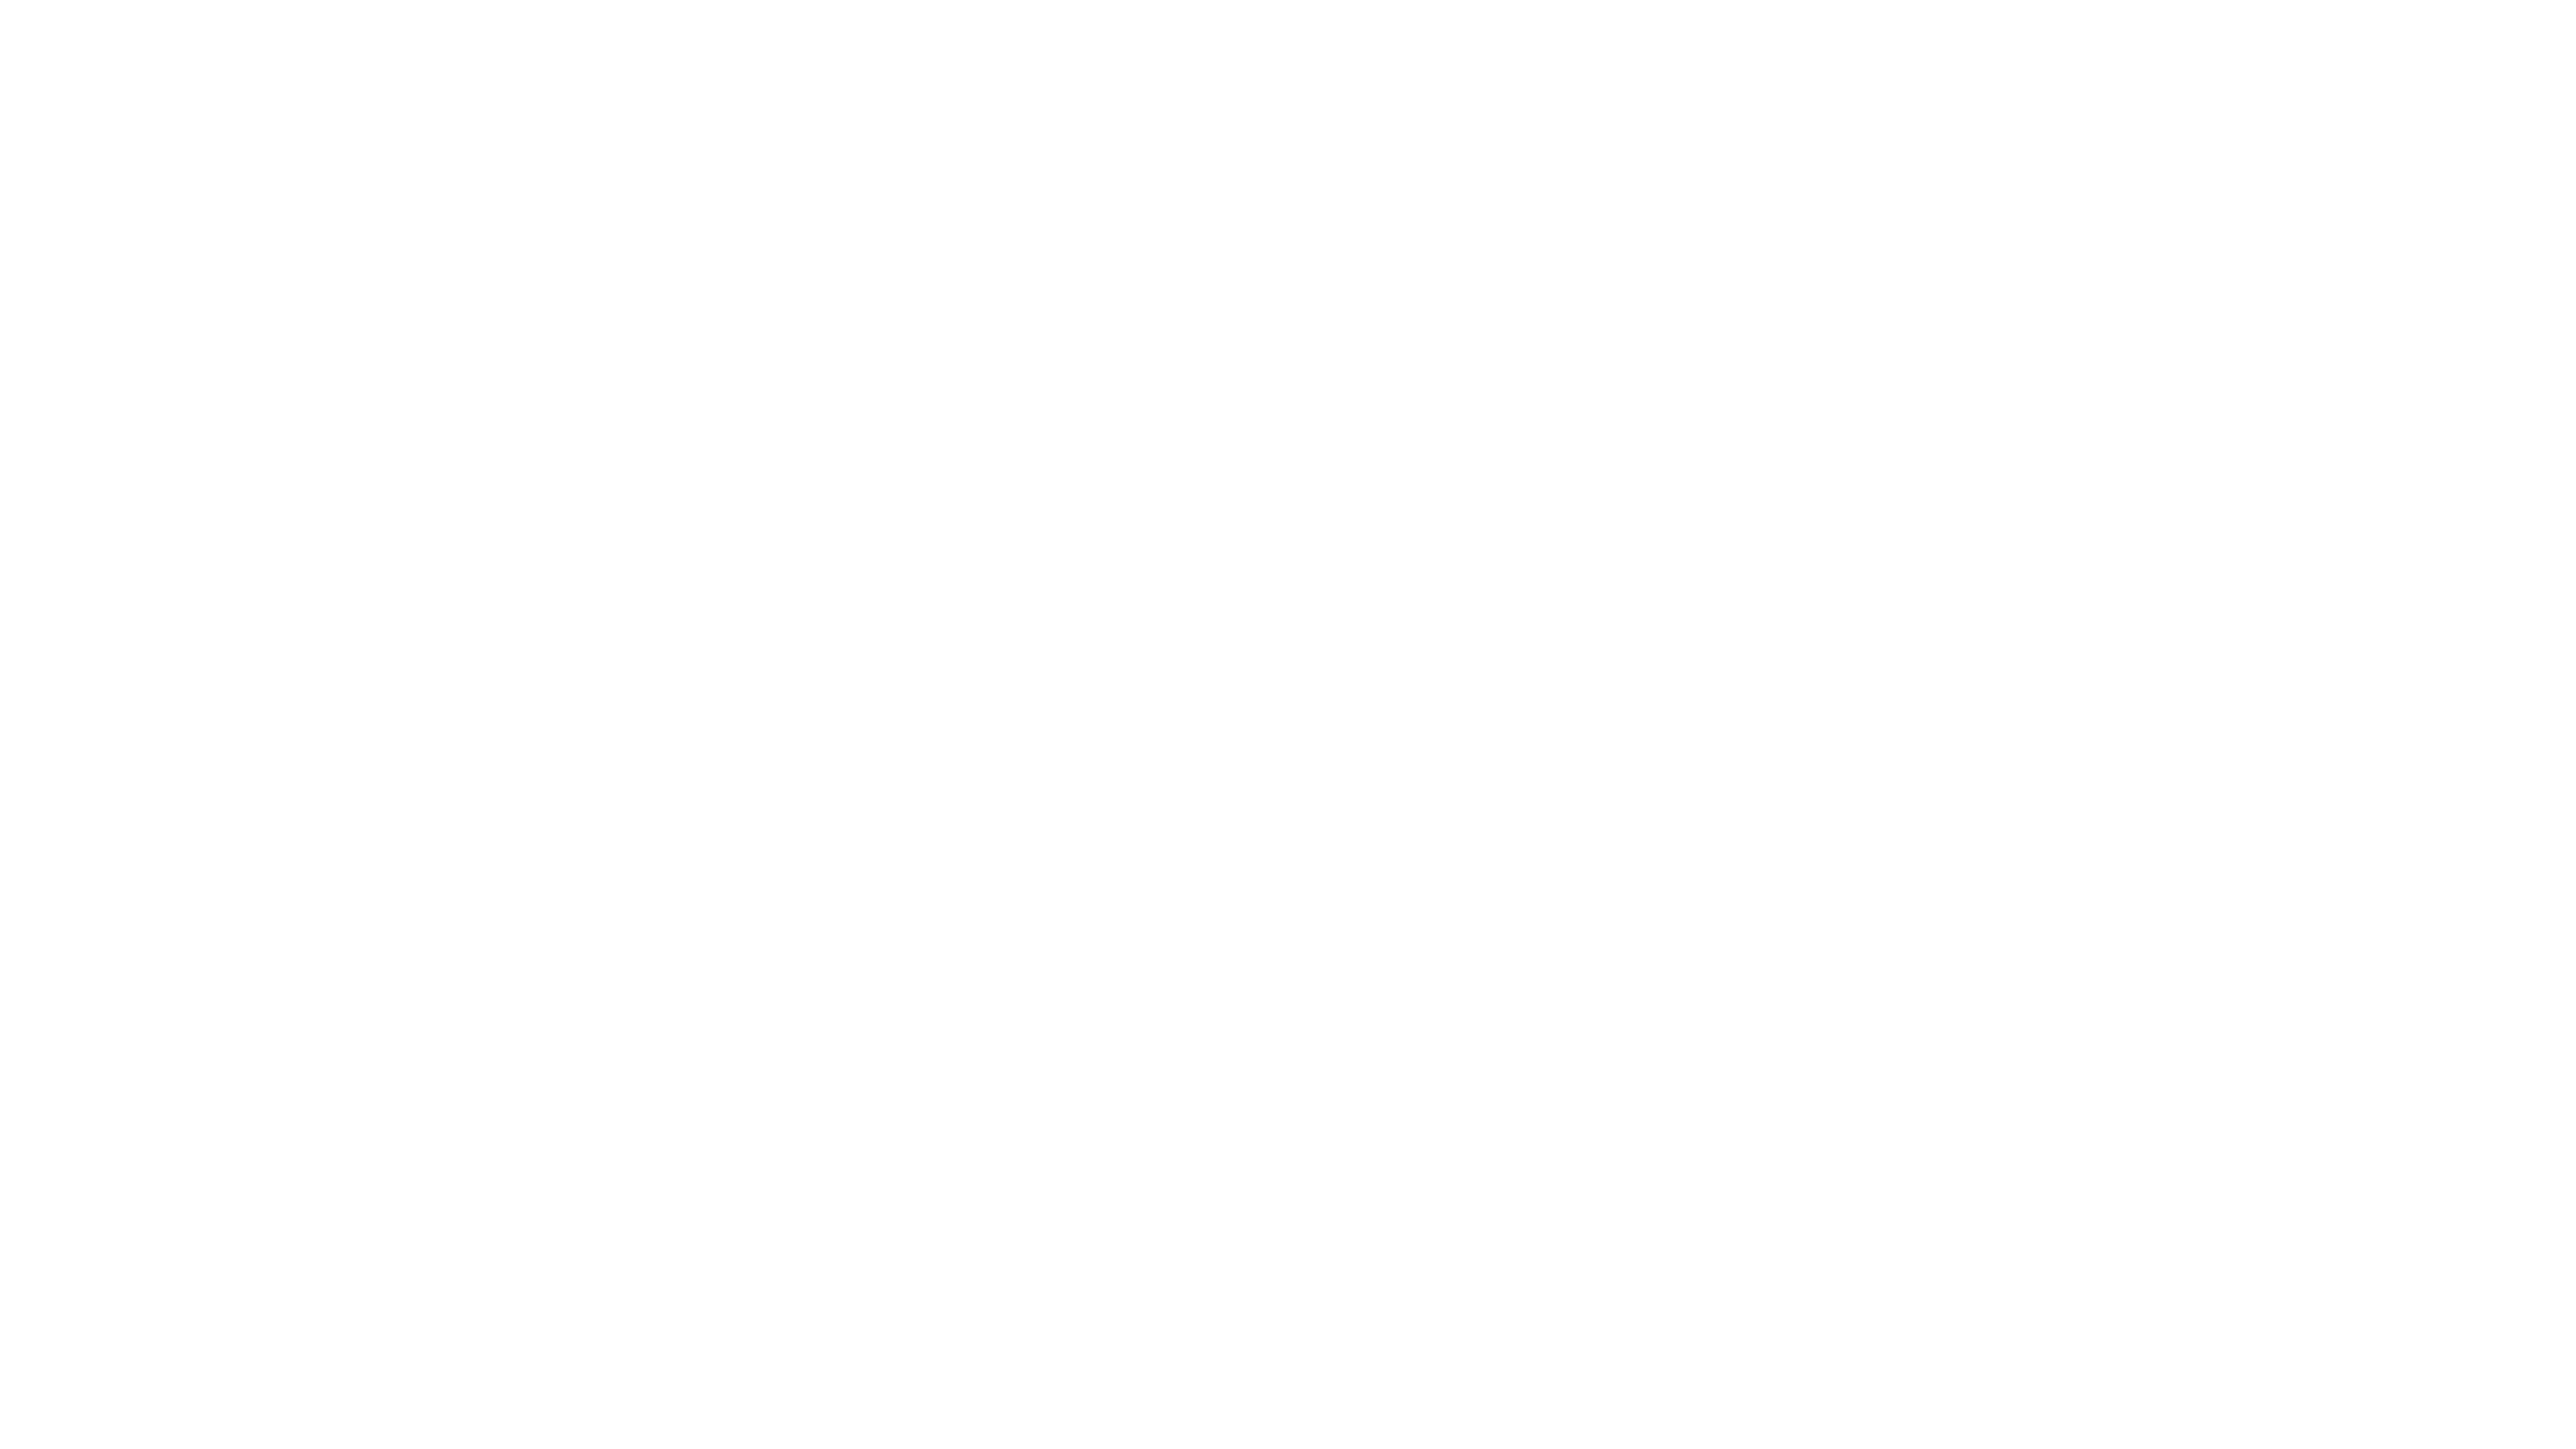 Ermenegildo-Zegna-logo copy